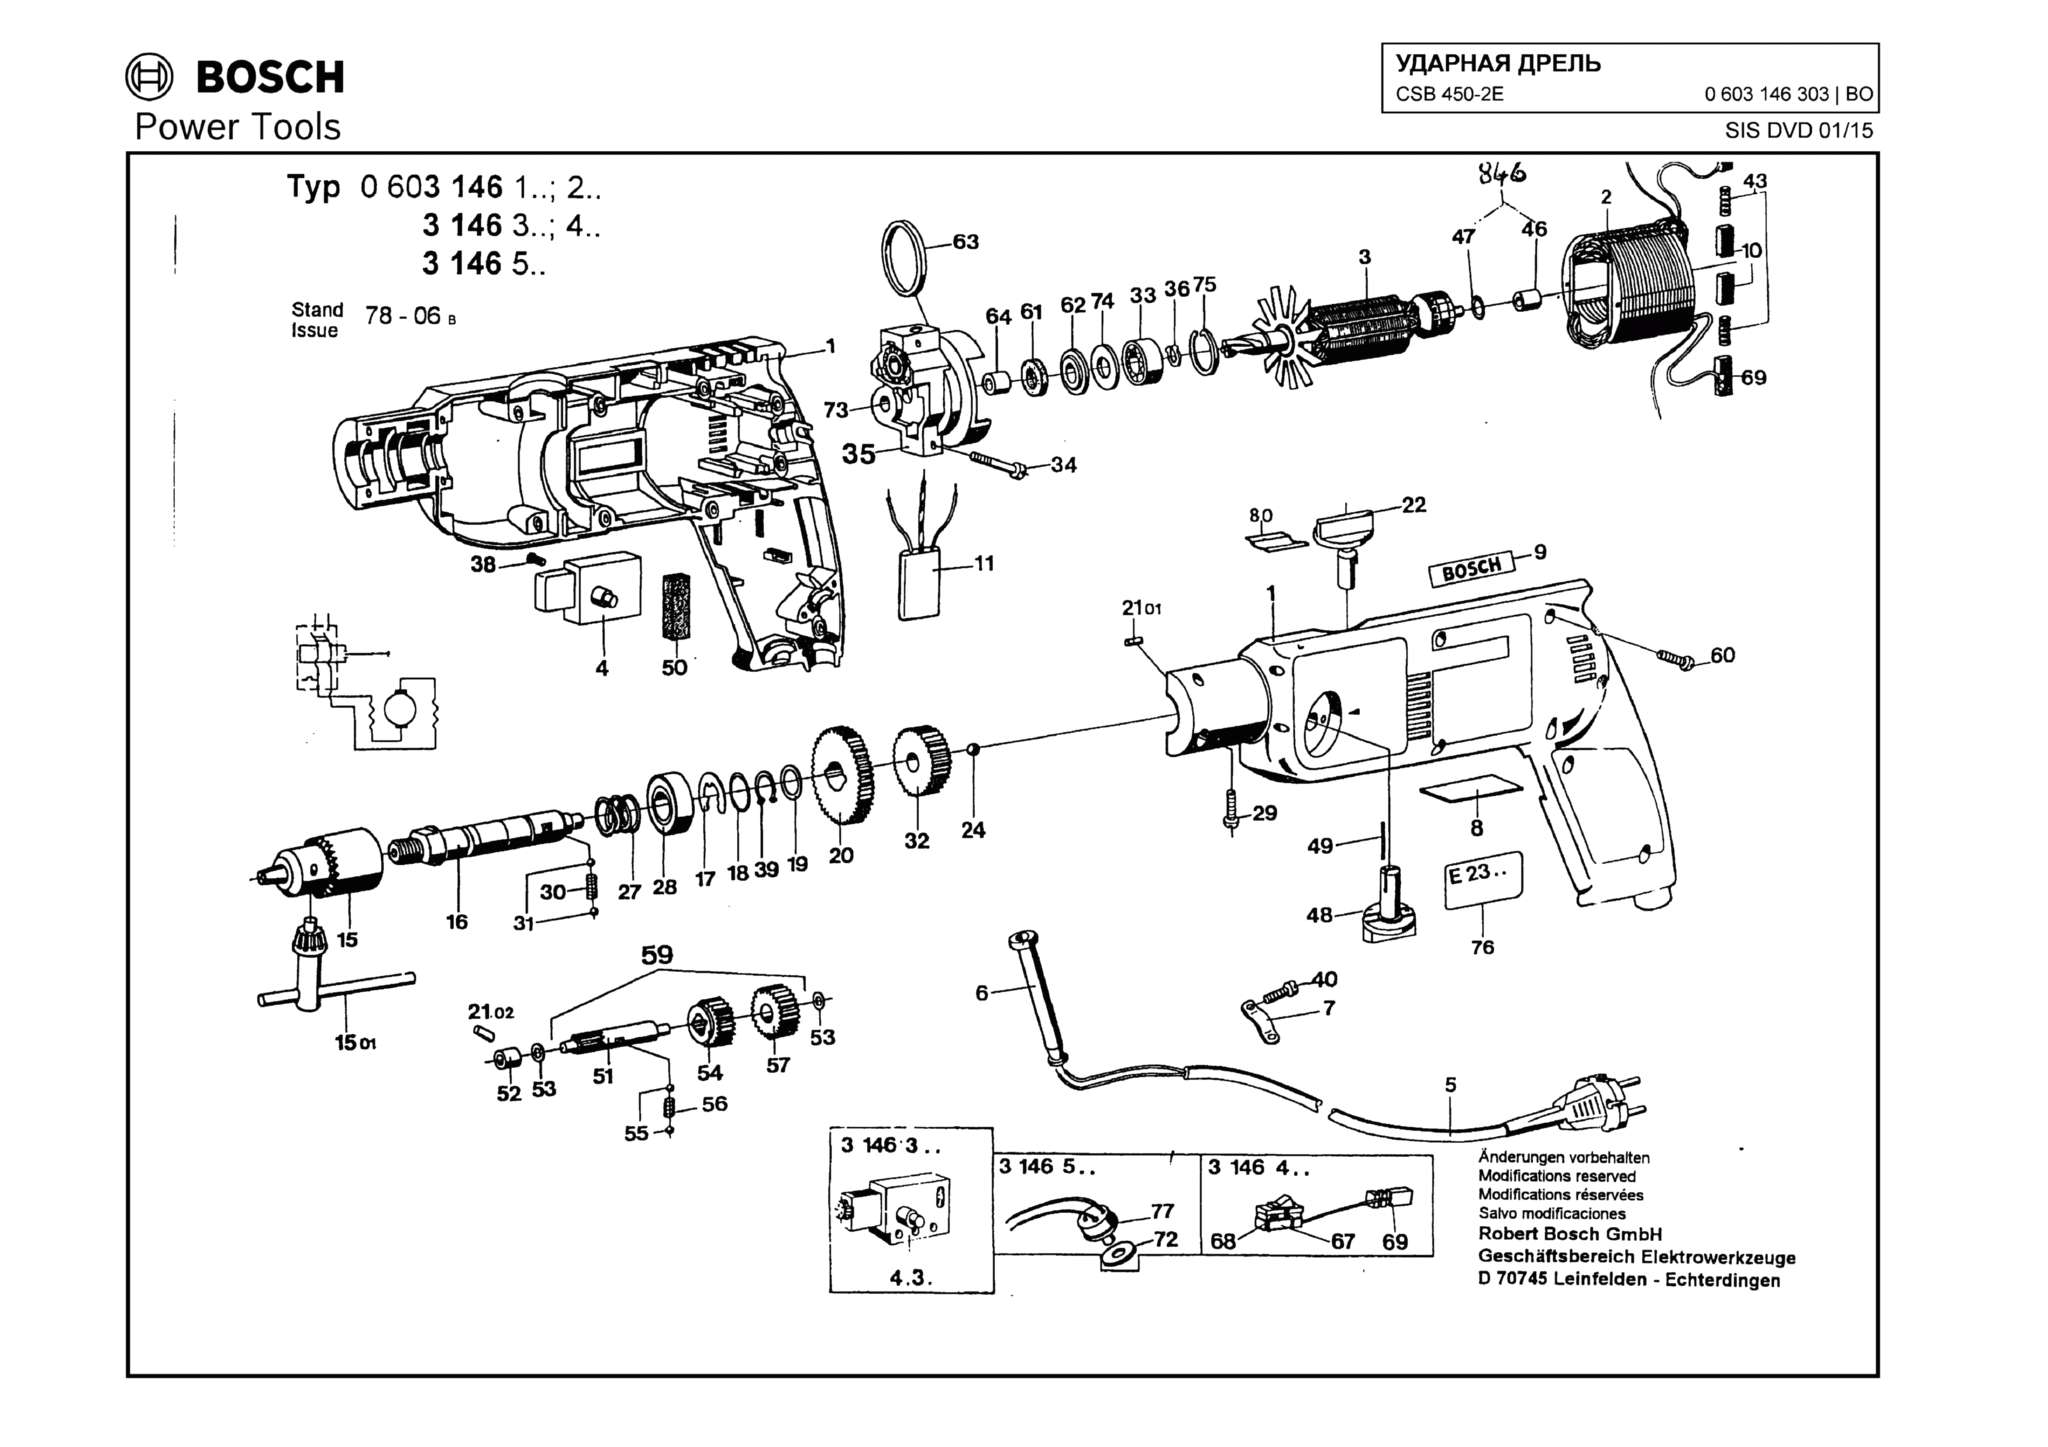 Запчасти, схема и деталировка Bosch CSB 450-2E (ТИП 0603146303)